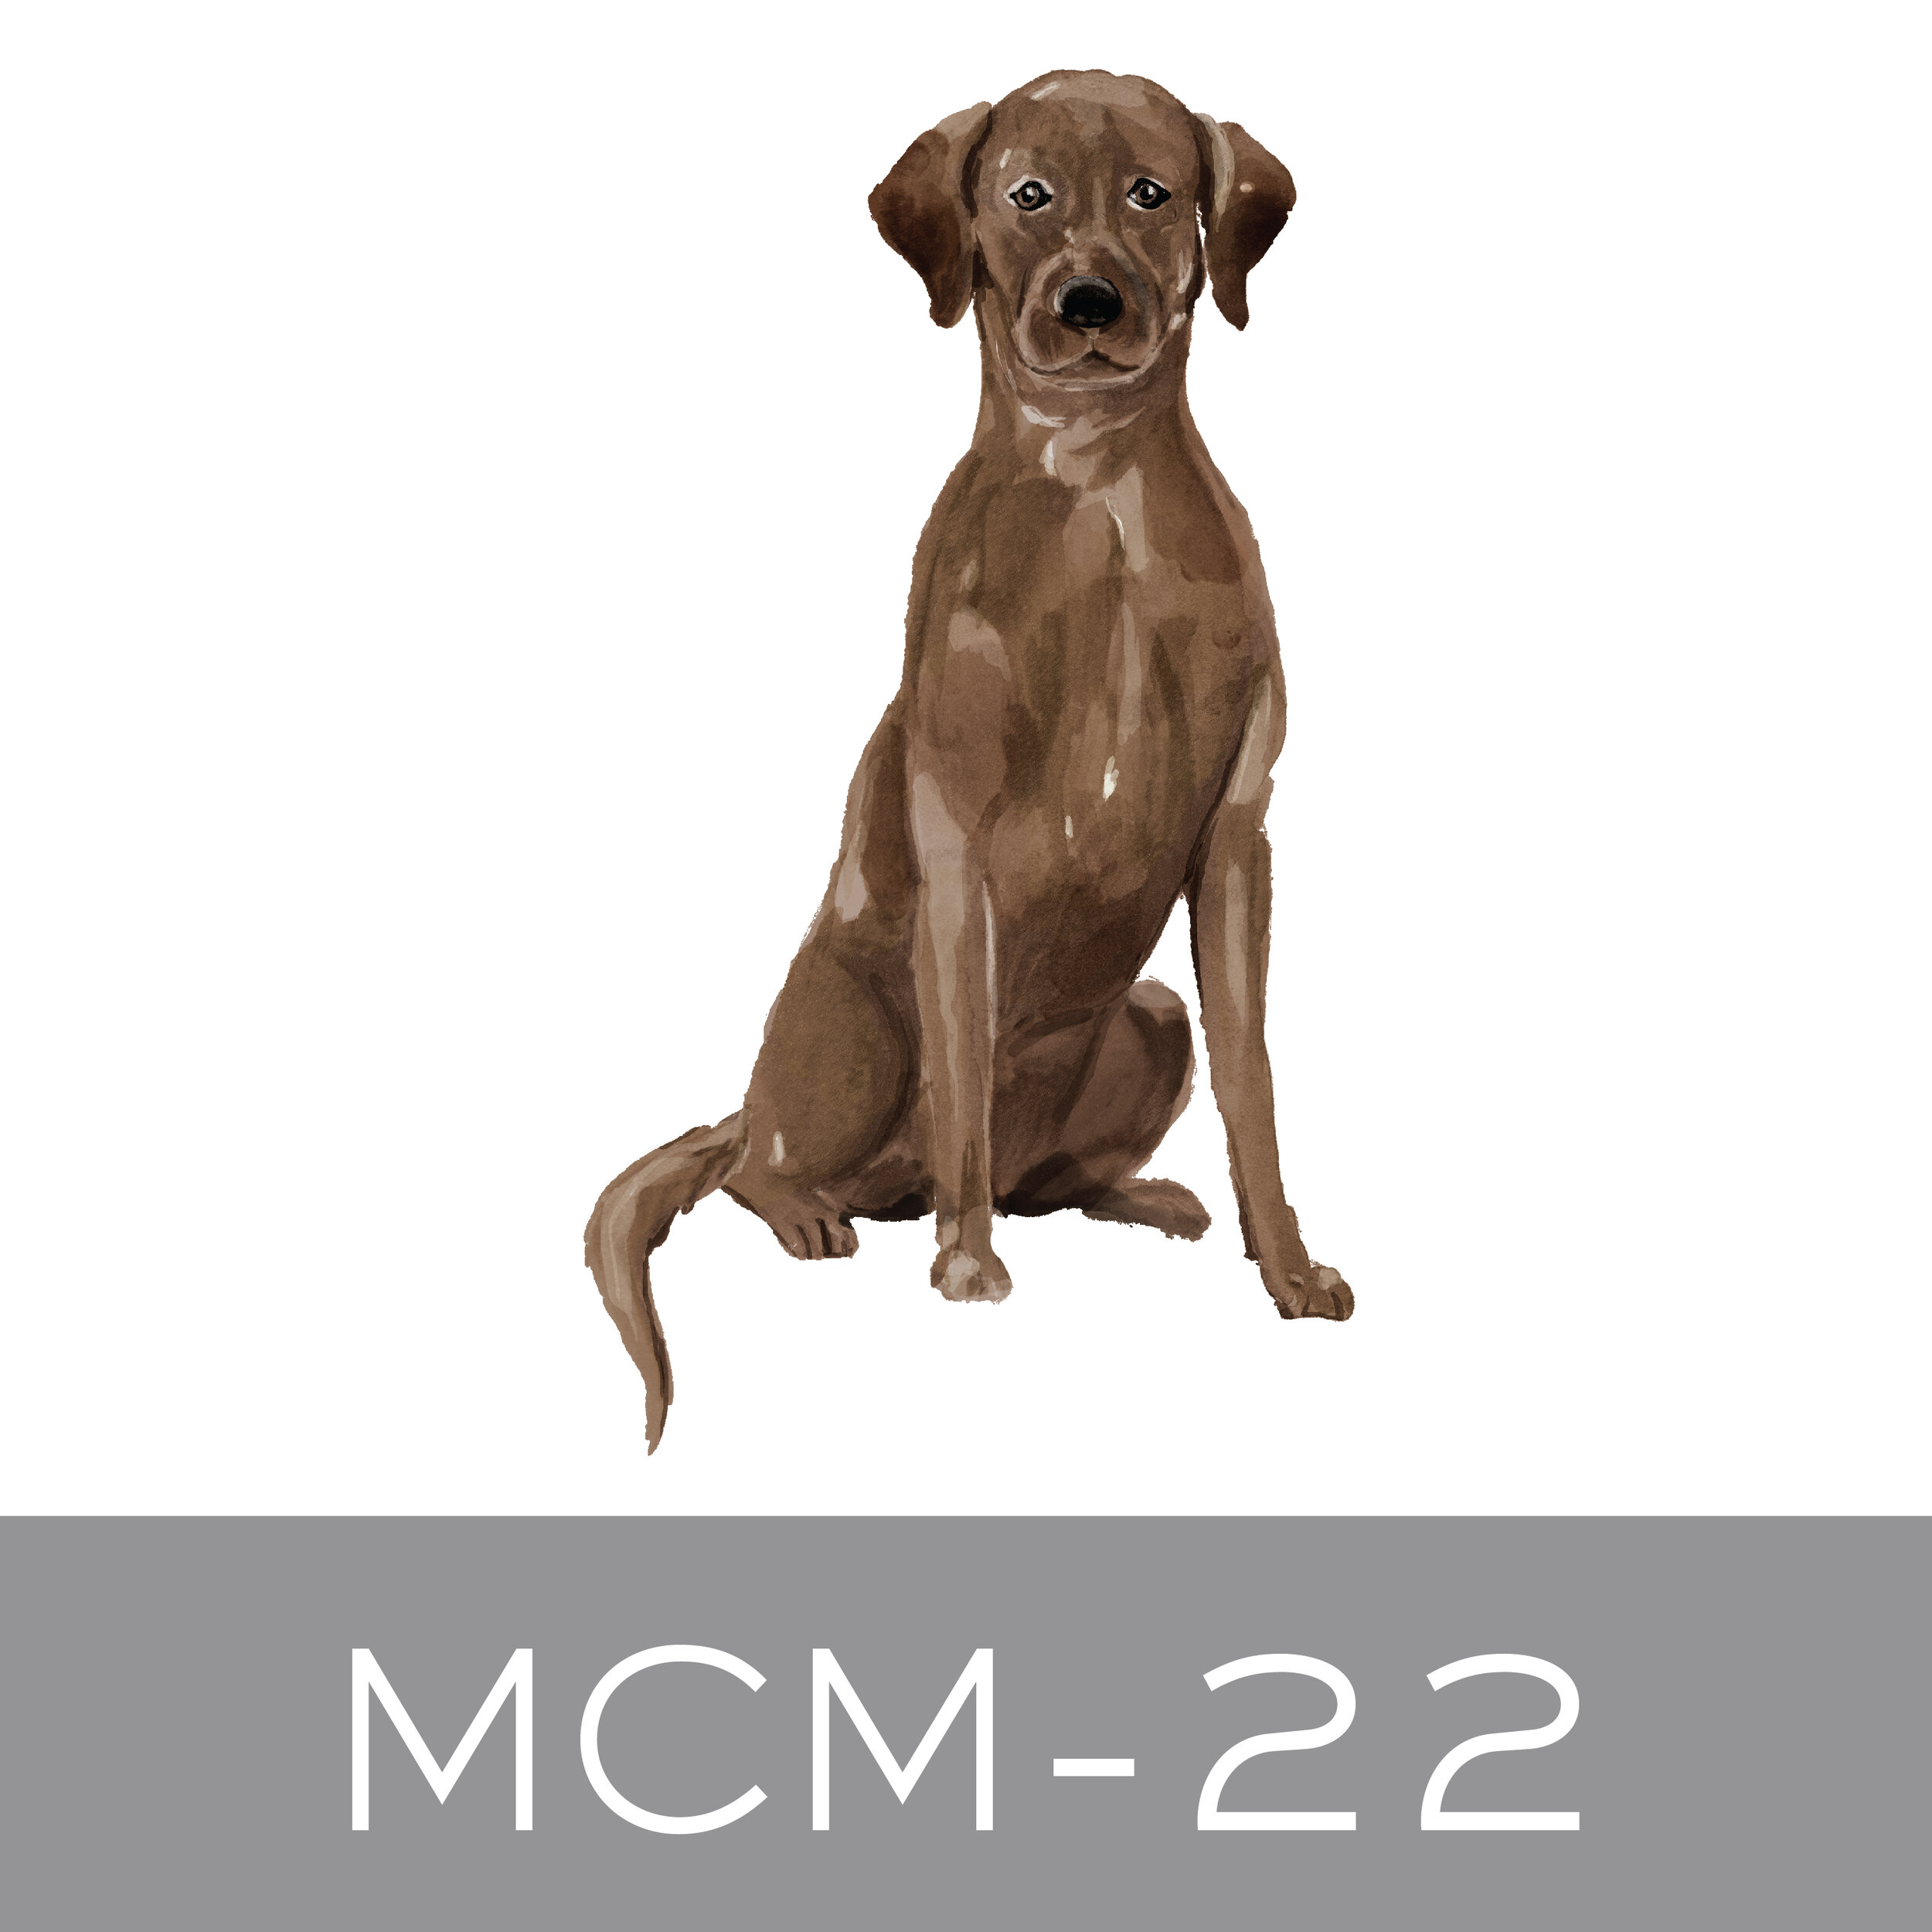 MCM-22.jpg